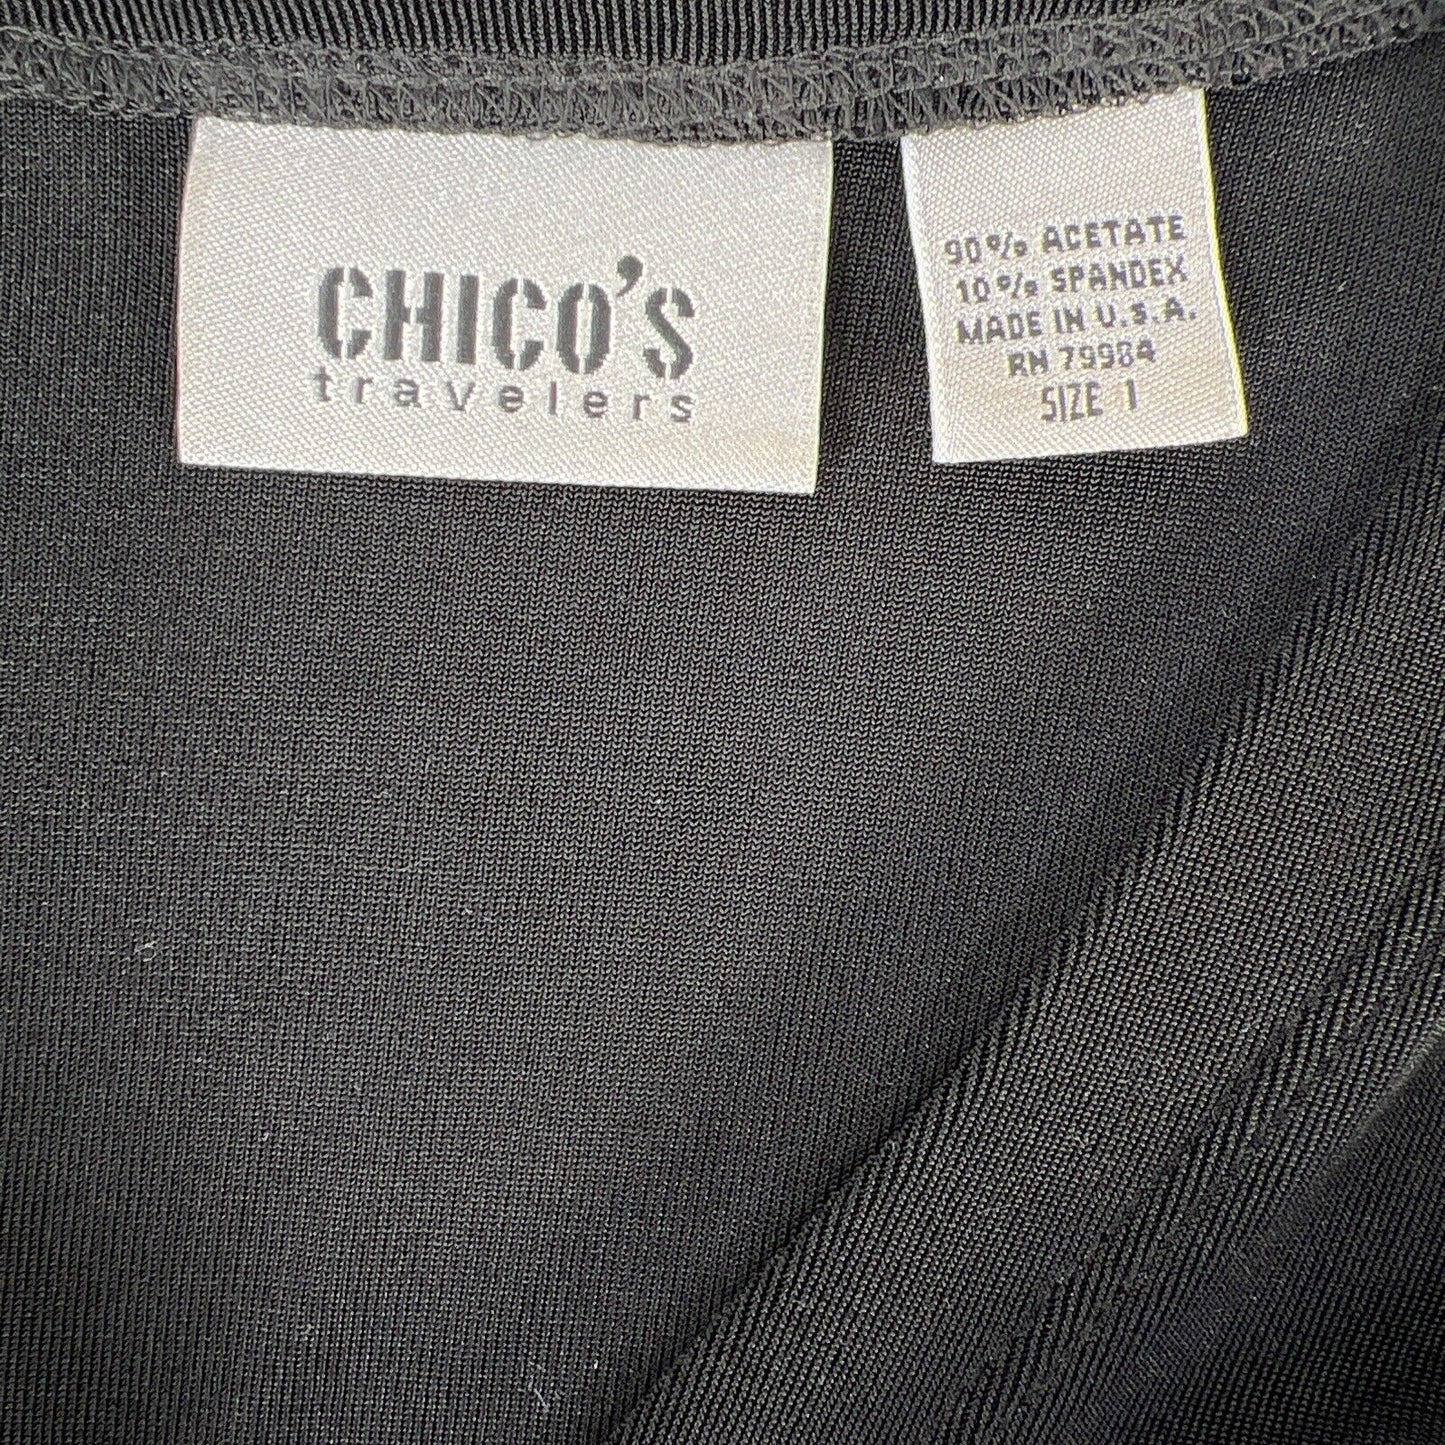 Chico's Traveler's Suéter tipo cárdigan con botones, color negro, para mujer - 1/M